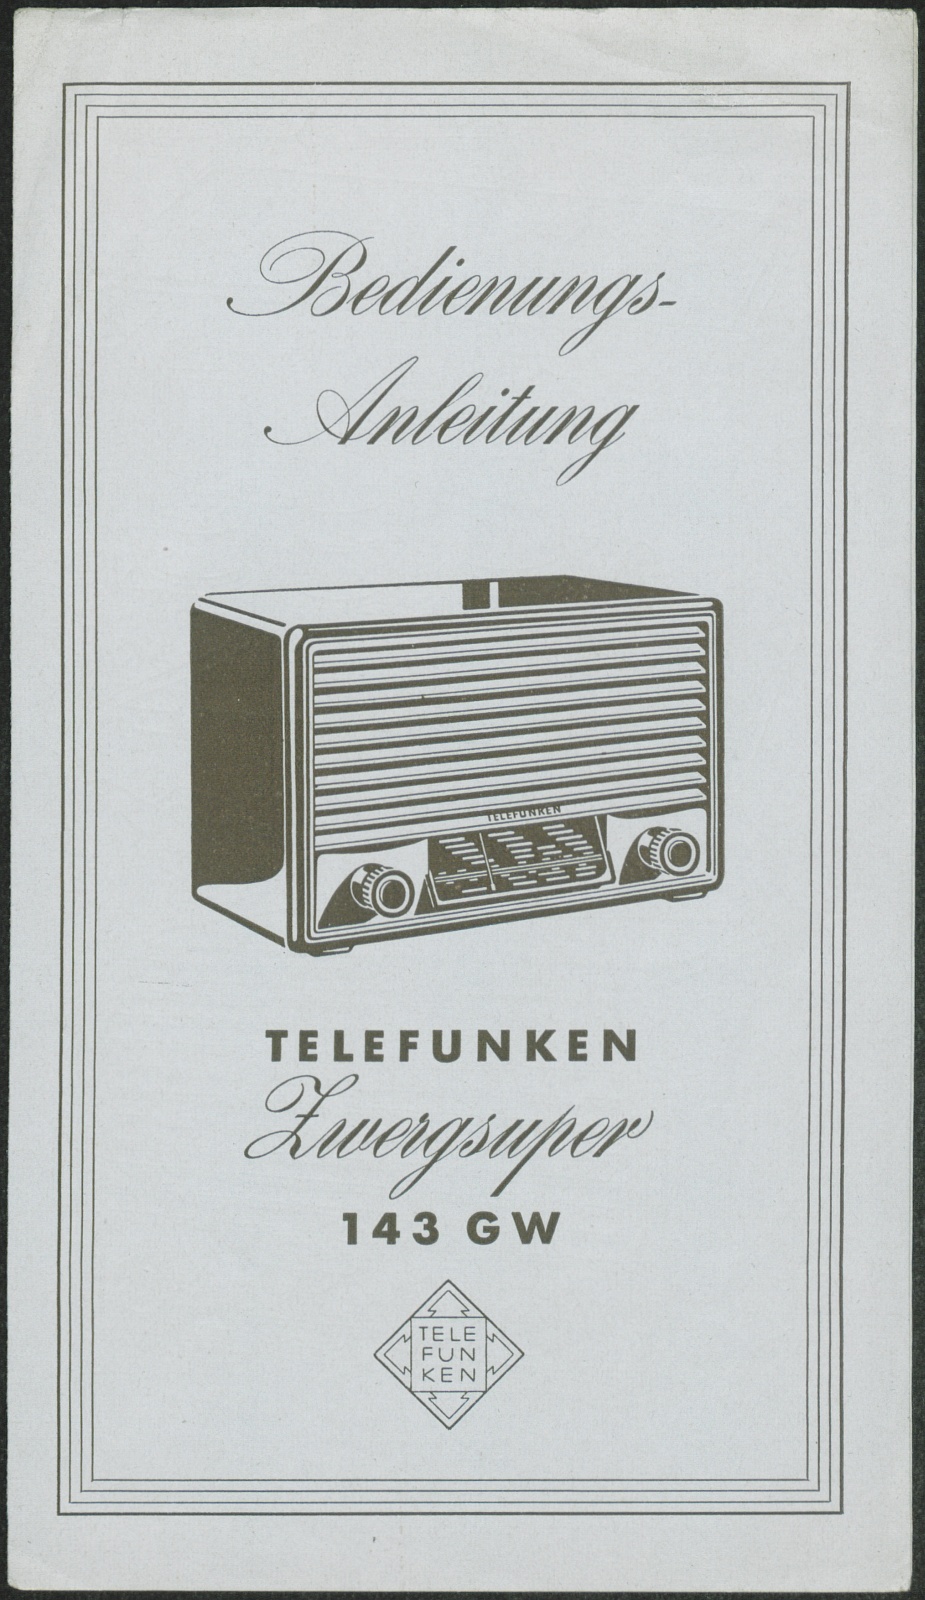 Bedienungsanleitung: Bedienungsanleitung Telefunken Zwergsuper 143 GW (Stiftung Deutsches Technikmuseum Berlin CC0)